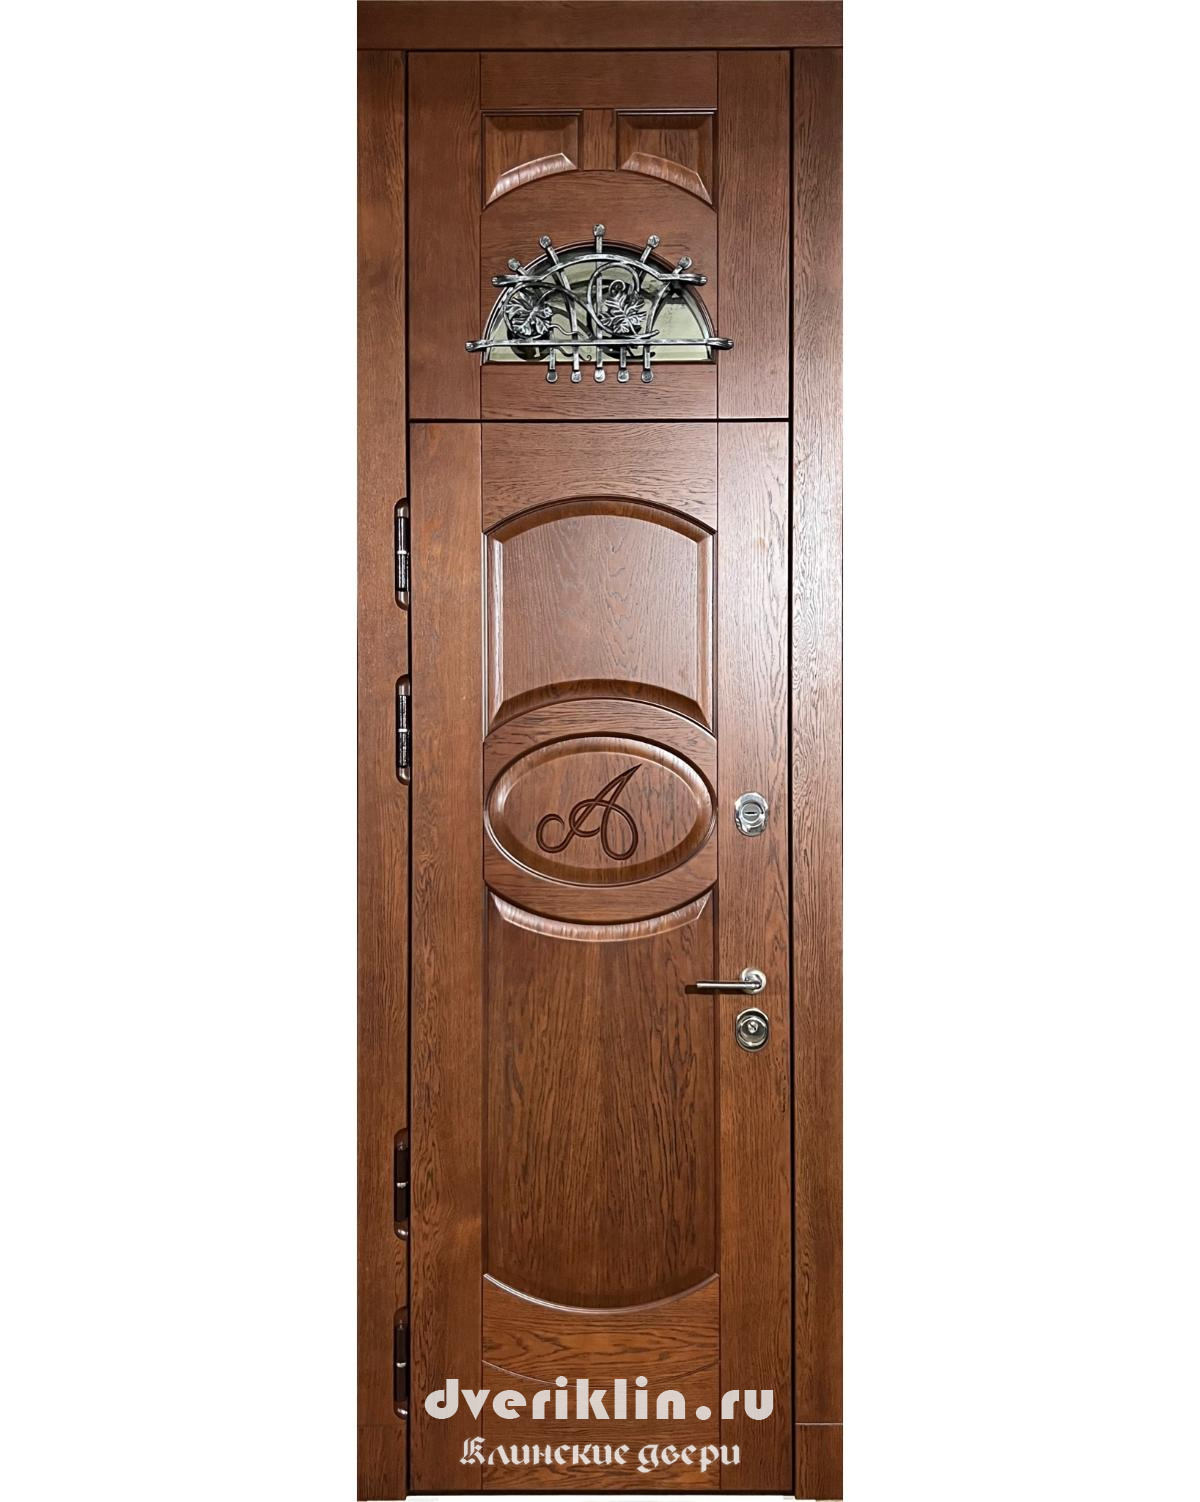 Дверь в коттедж MKD-01 (В коттедж)